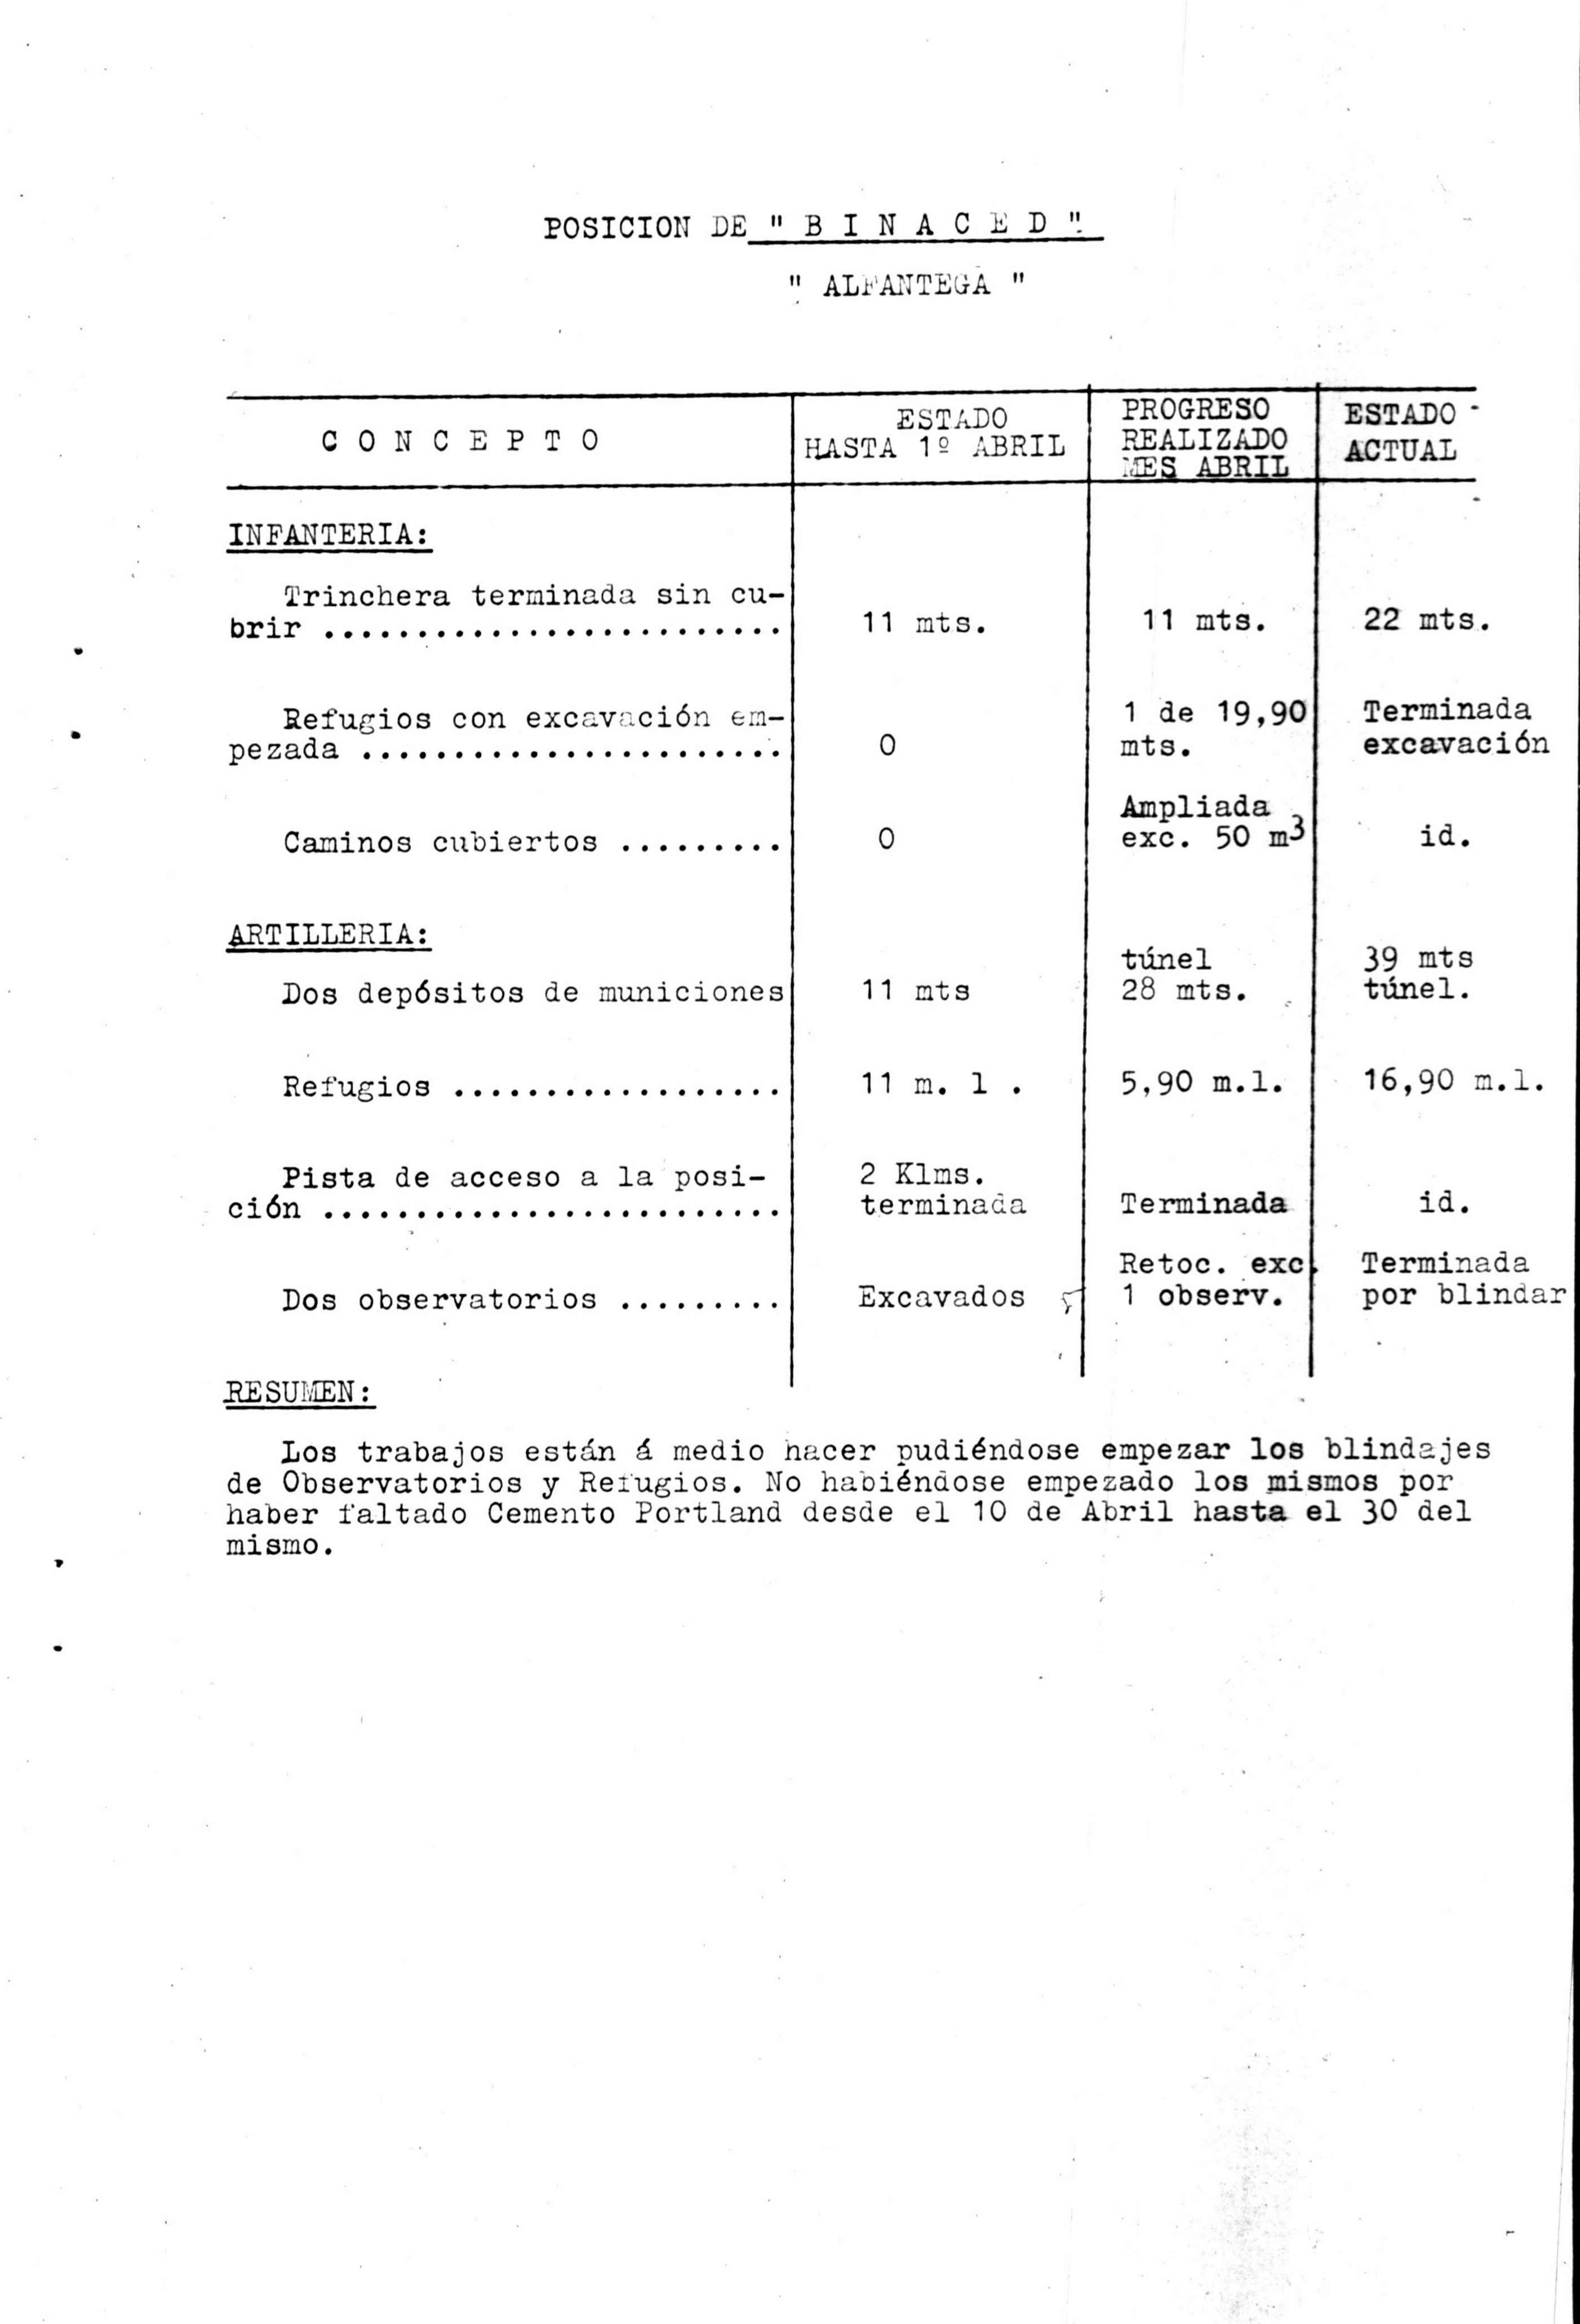 Resumen de las obras realizadas en el mes de abril de 1937 en las posiciones de Binaced (Alfántega)